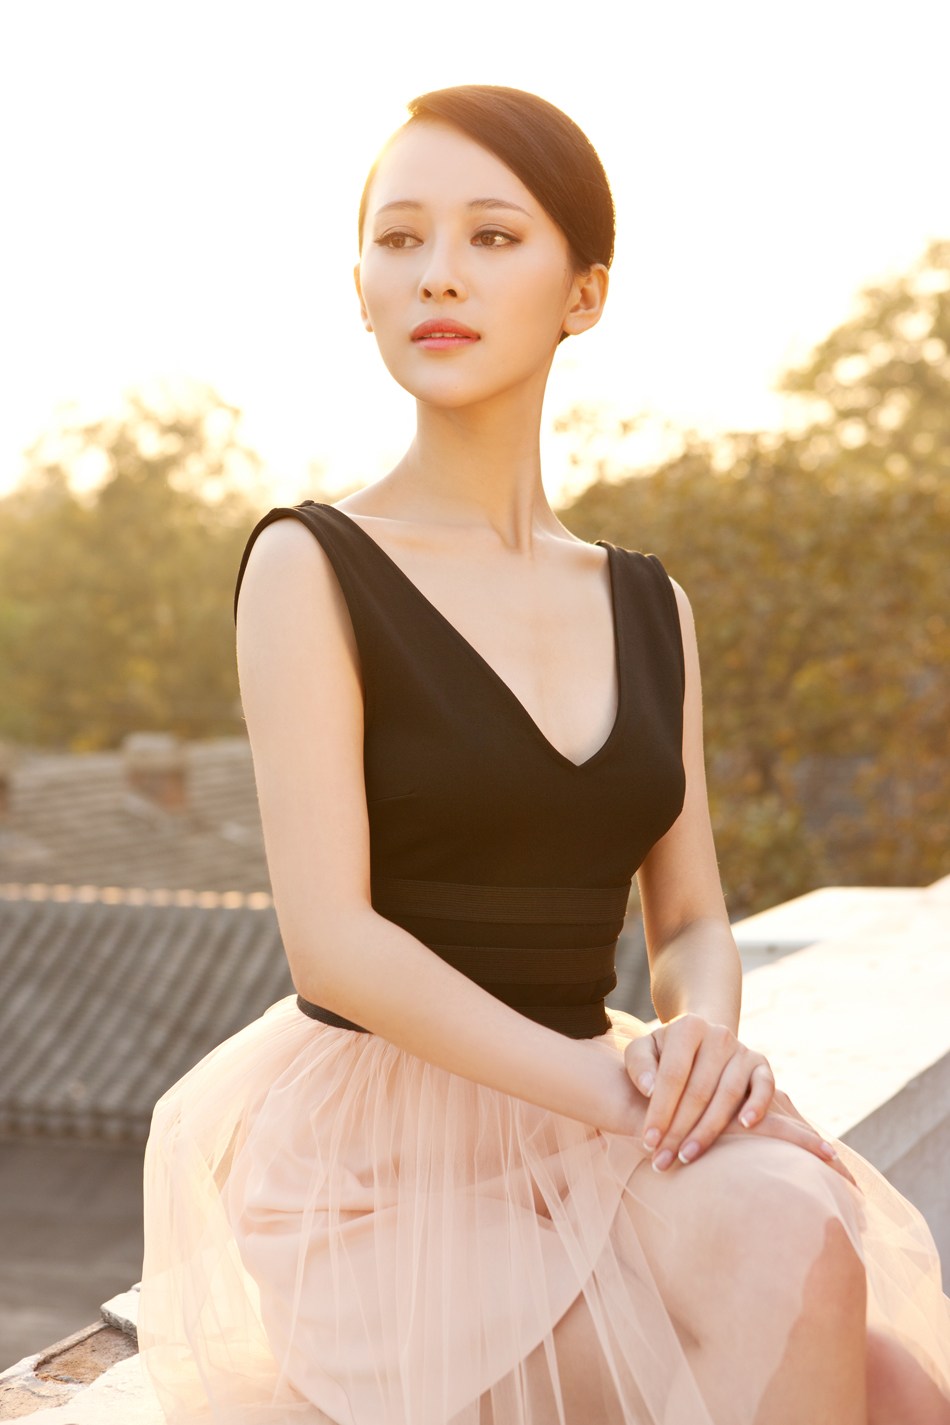 小公主刘娜萍的一组阳光美照,阳光下的她更加娇艳无比